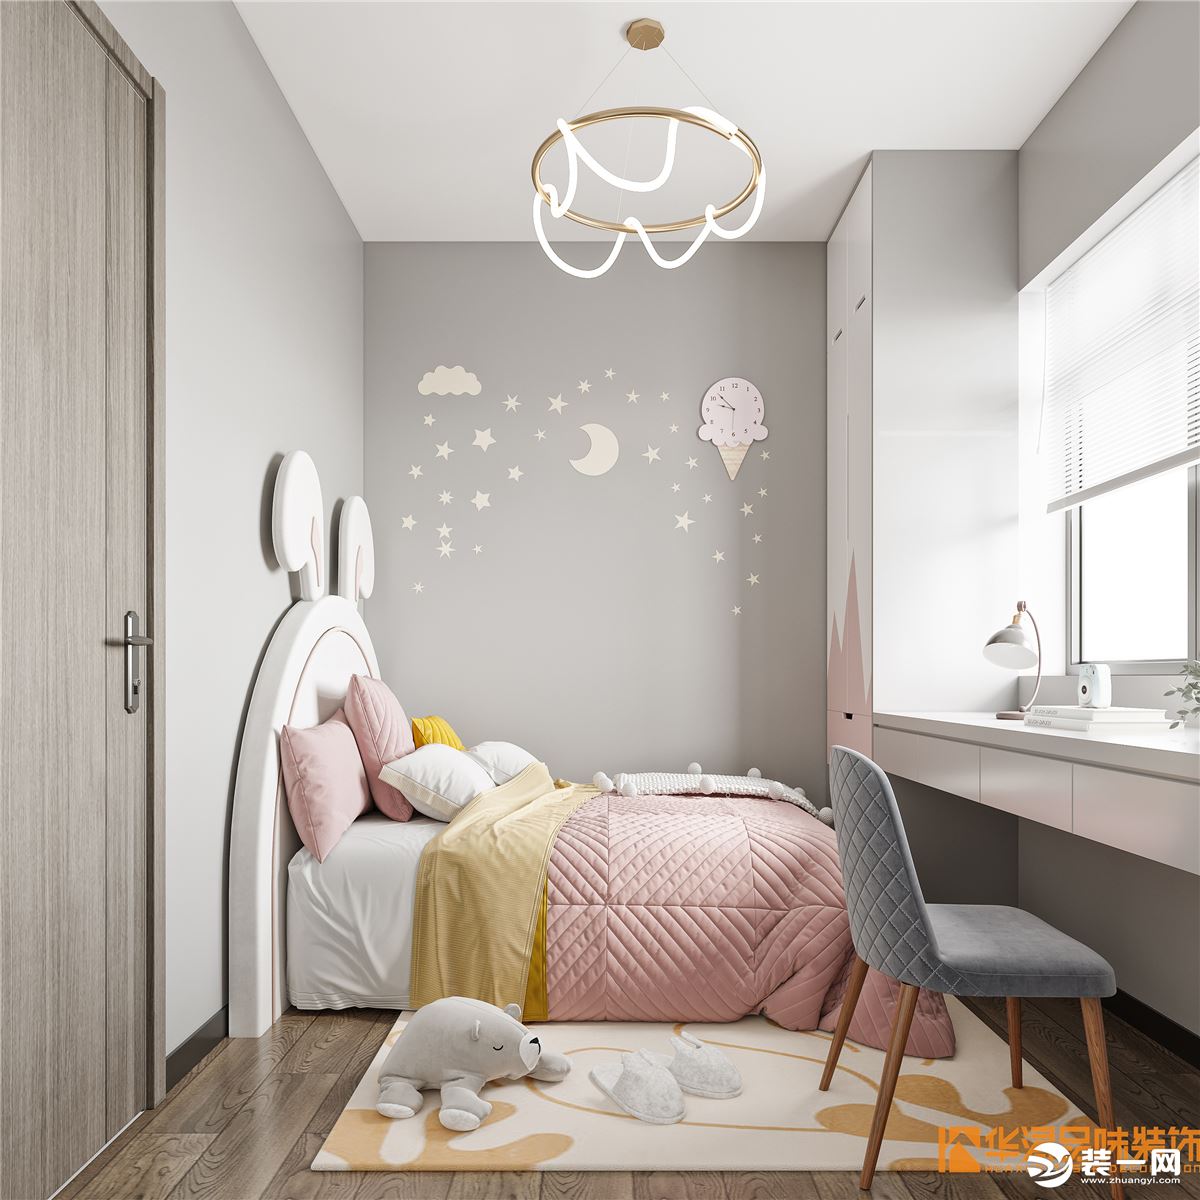 女孩子的房间用一些粉嫩的颜色会特别可爱，儿童房会比较用心在软饰搭配，背景墙和灯饰还有色系的搭配